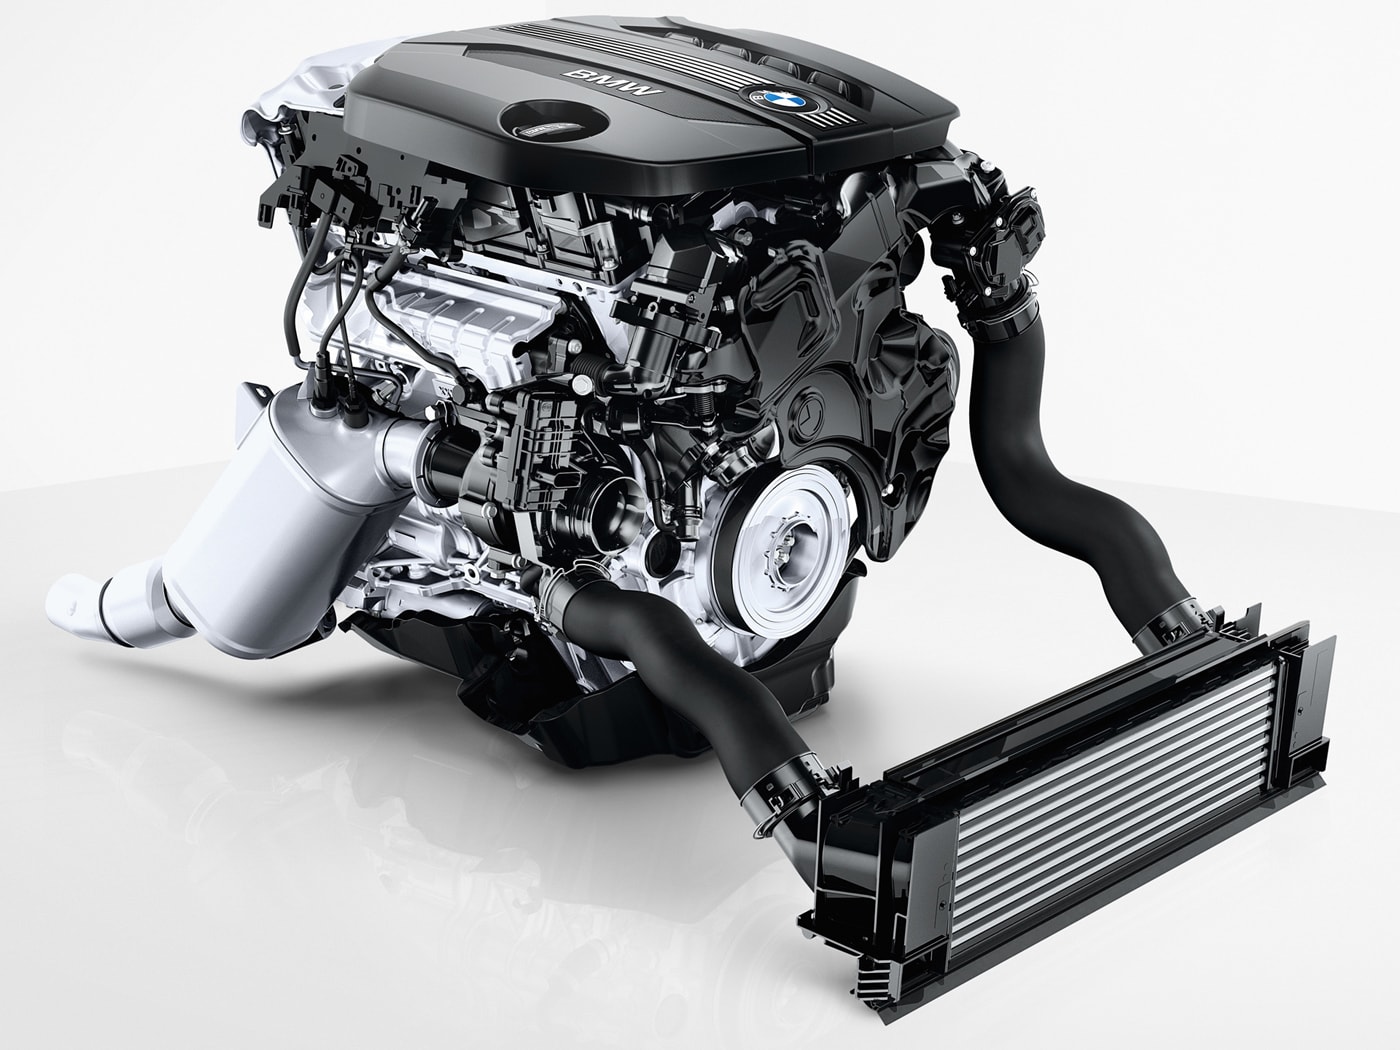 Двигатель BMW S85 V10 - легендарный мотор из Баварии